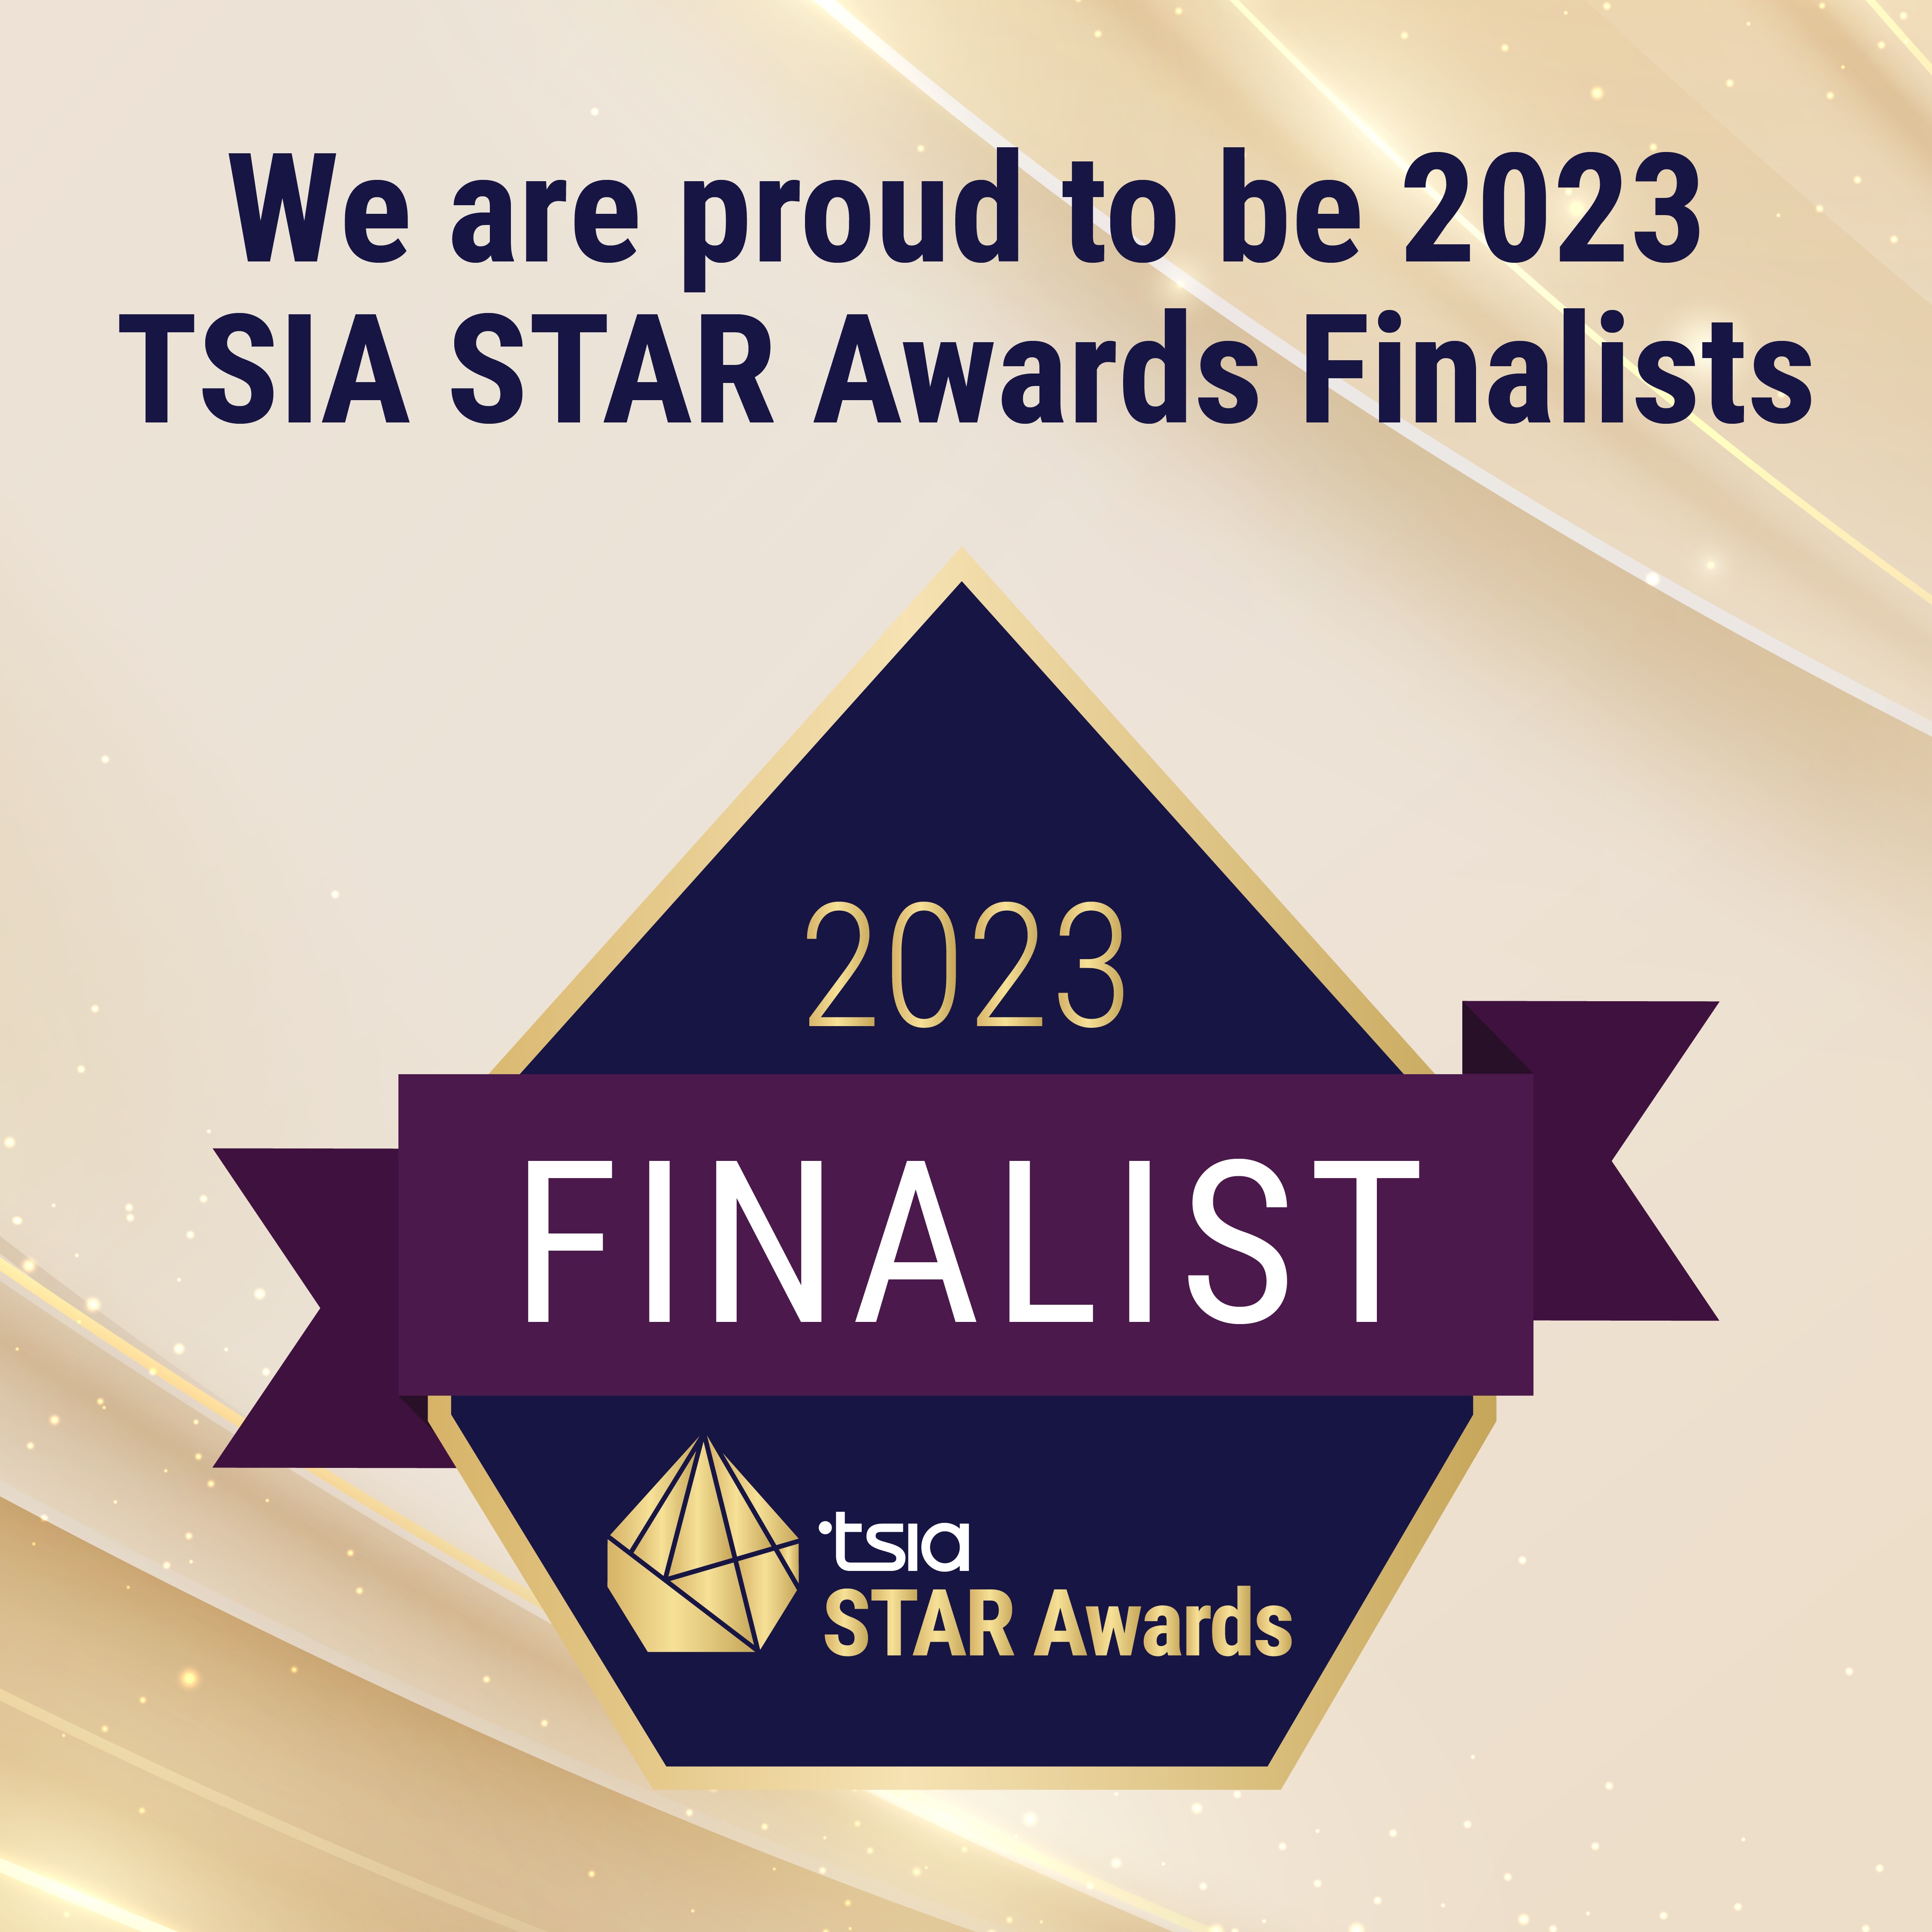 TSIA STAR Awards 2023 Finalist